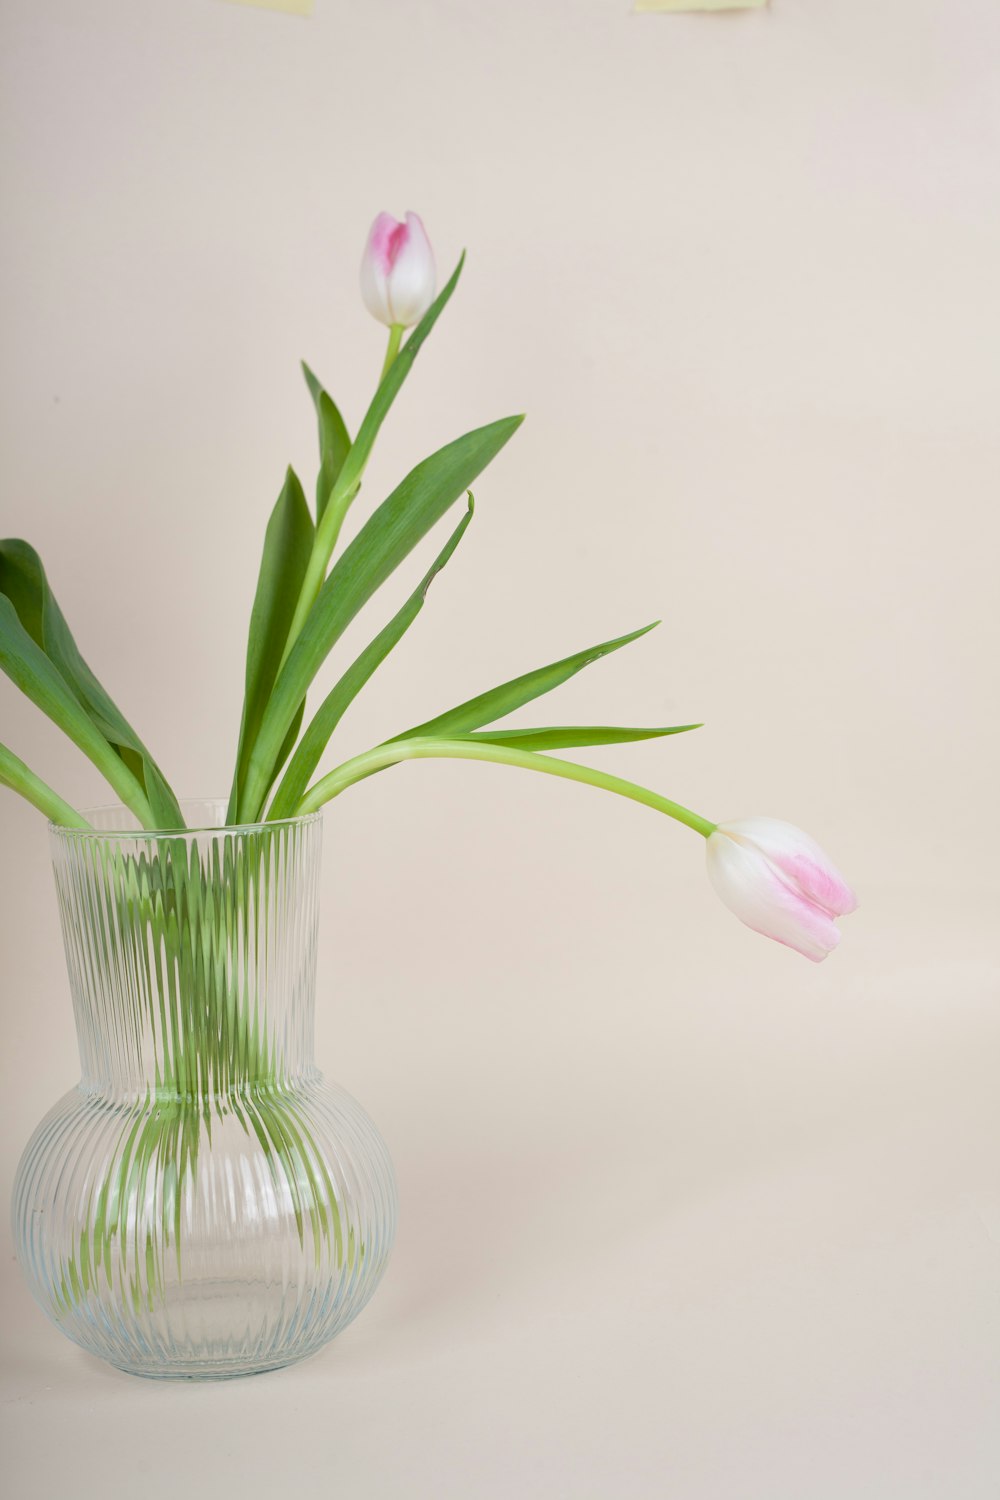 Un jarrón de vidrio lleno de tulipanes rosados y blancos